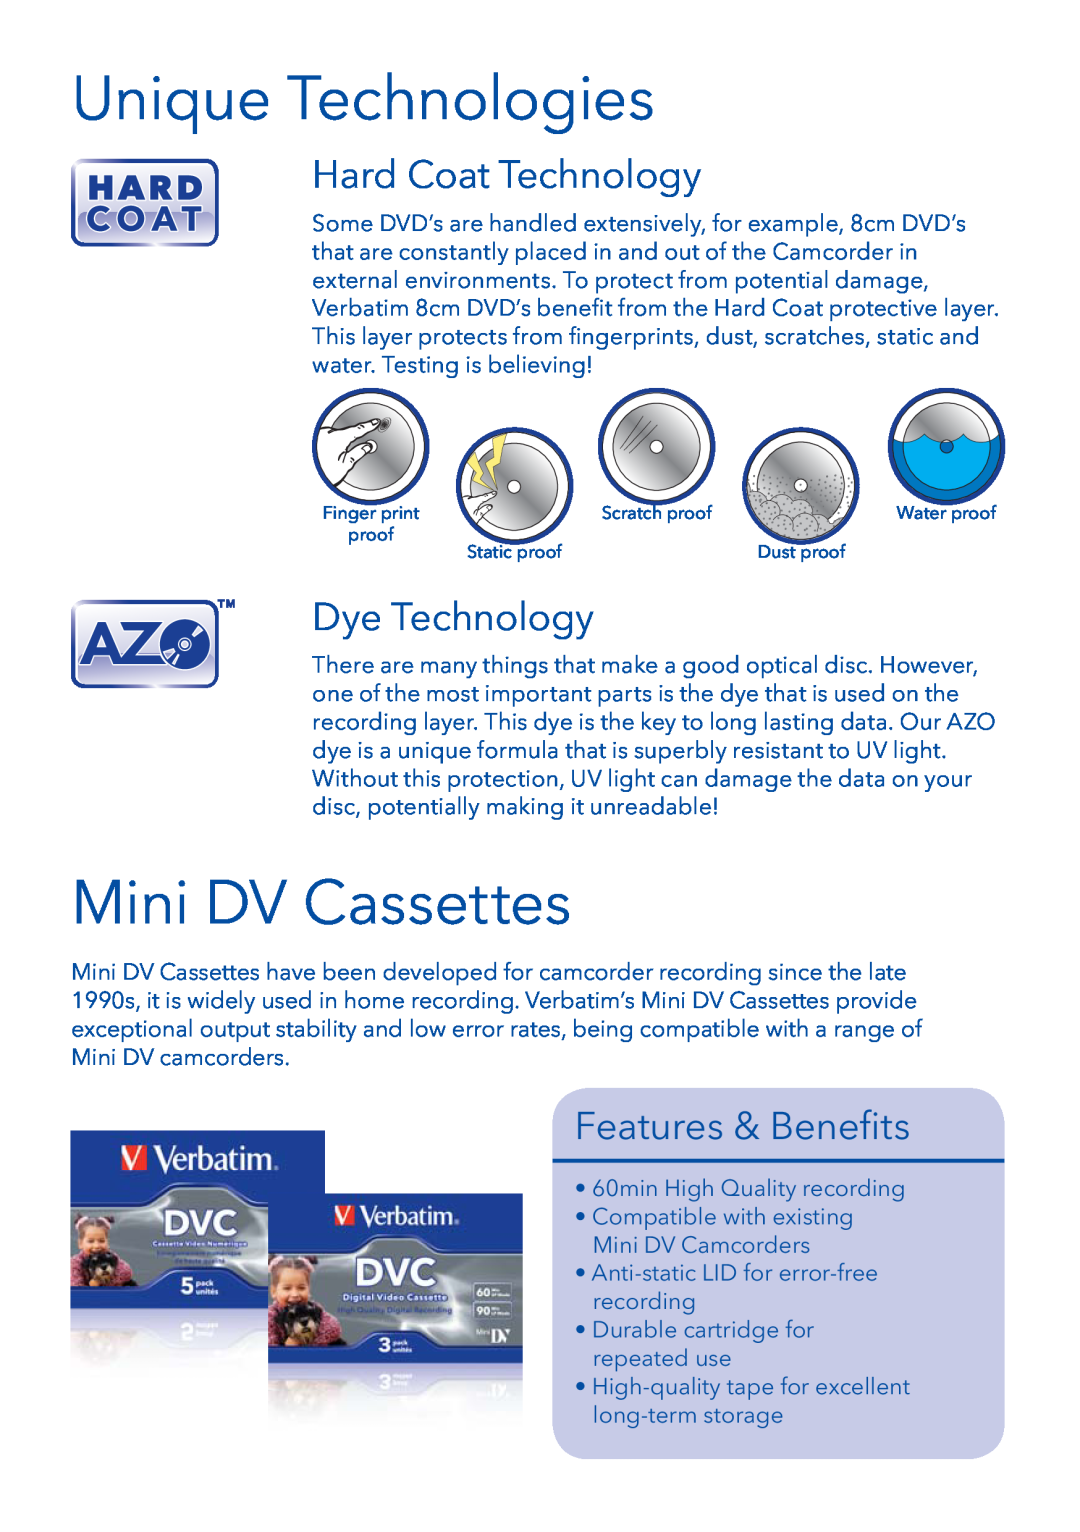 Verbatim 8cm DVD manual Unique Technologies, Mini DV Cassettes, Hard Coat Technology, Dye Technology, Features & Beneﬁts 